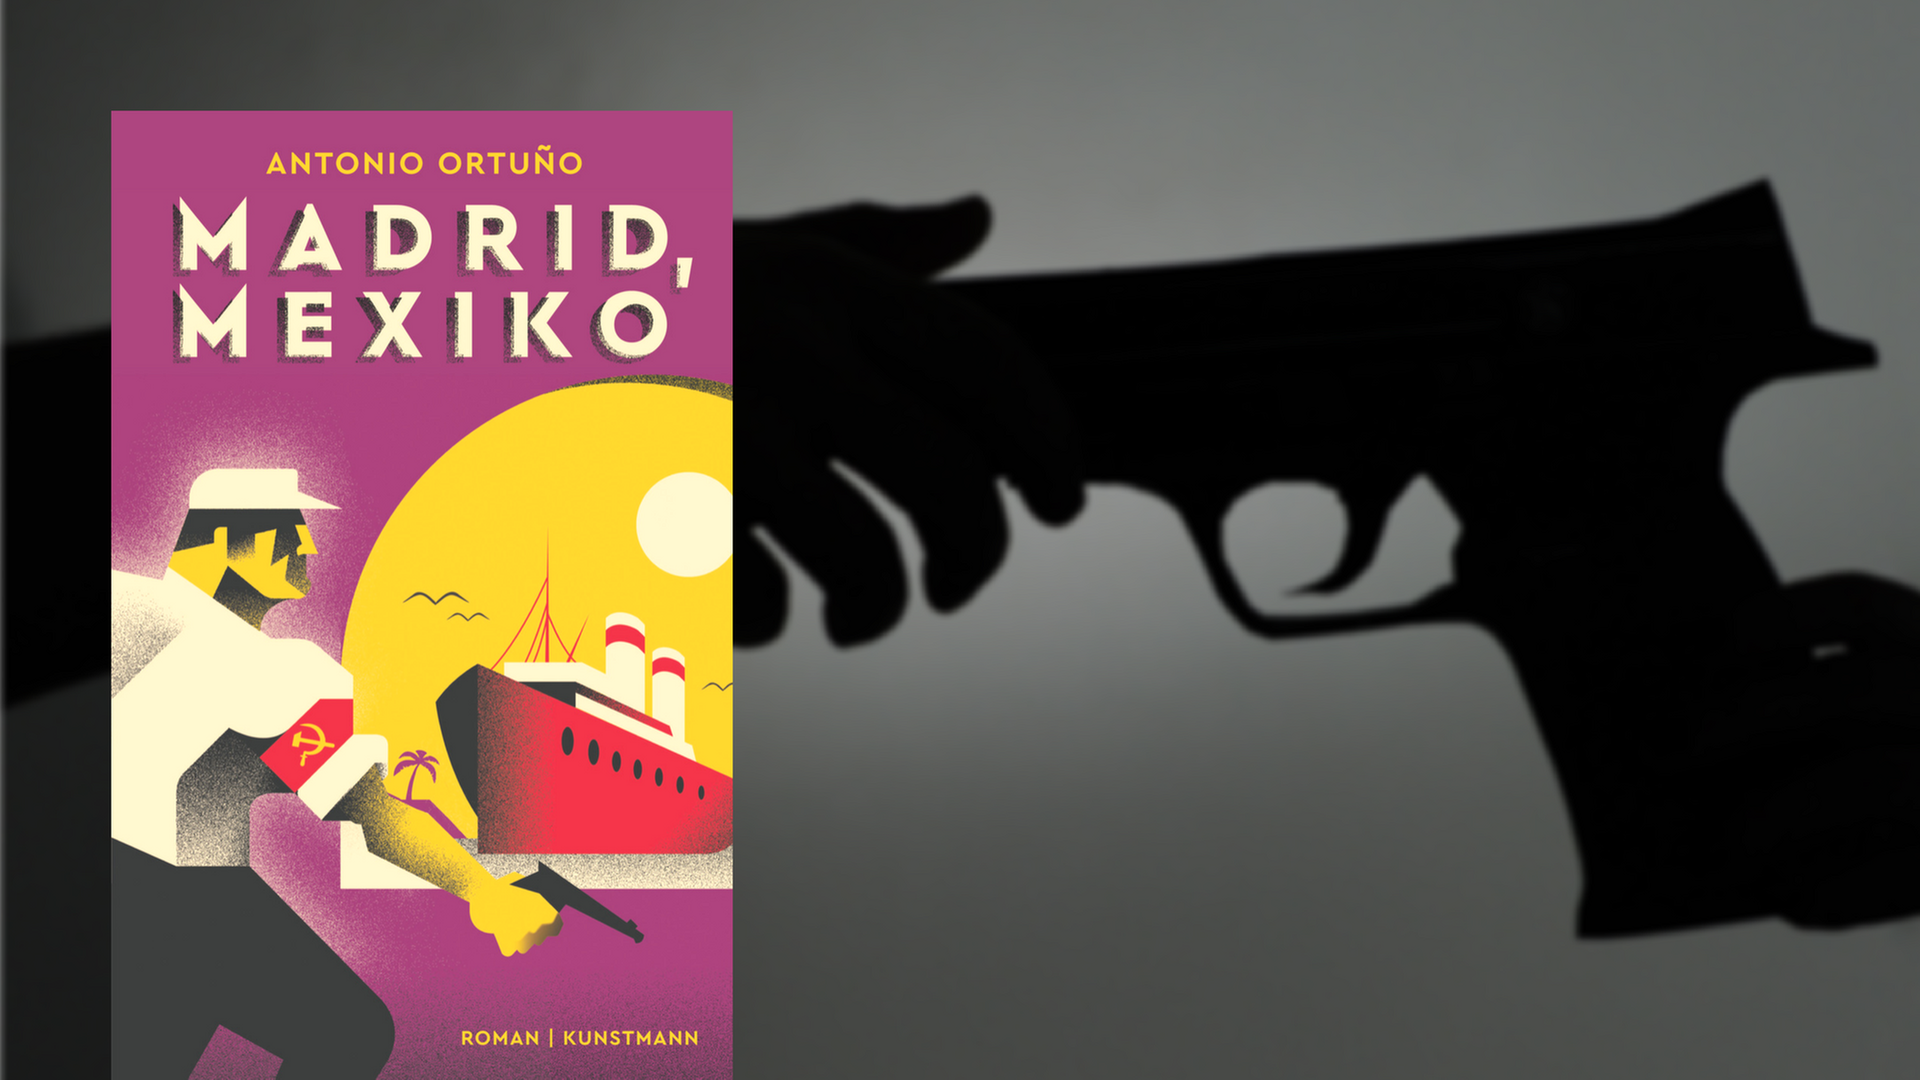 Cover von Antonio Ortuño: "Madrid, Mexiko", im Hintergrund überreichen sich zwei Hände eine Waffe